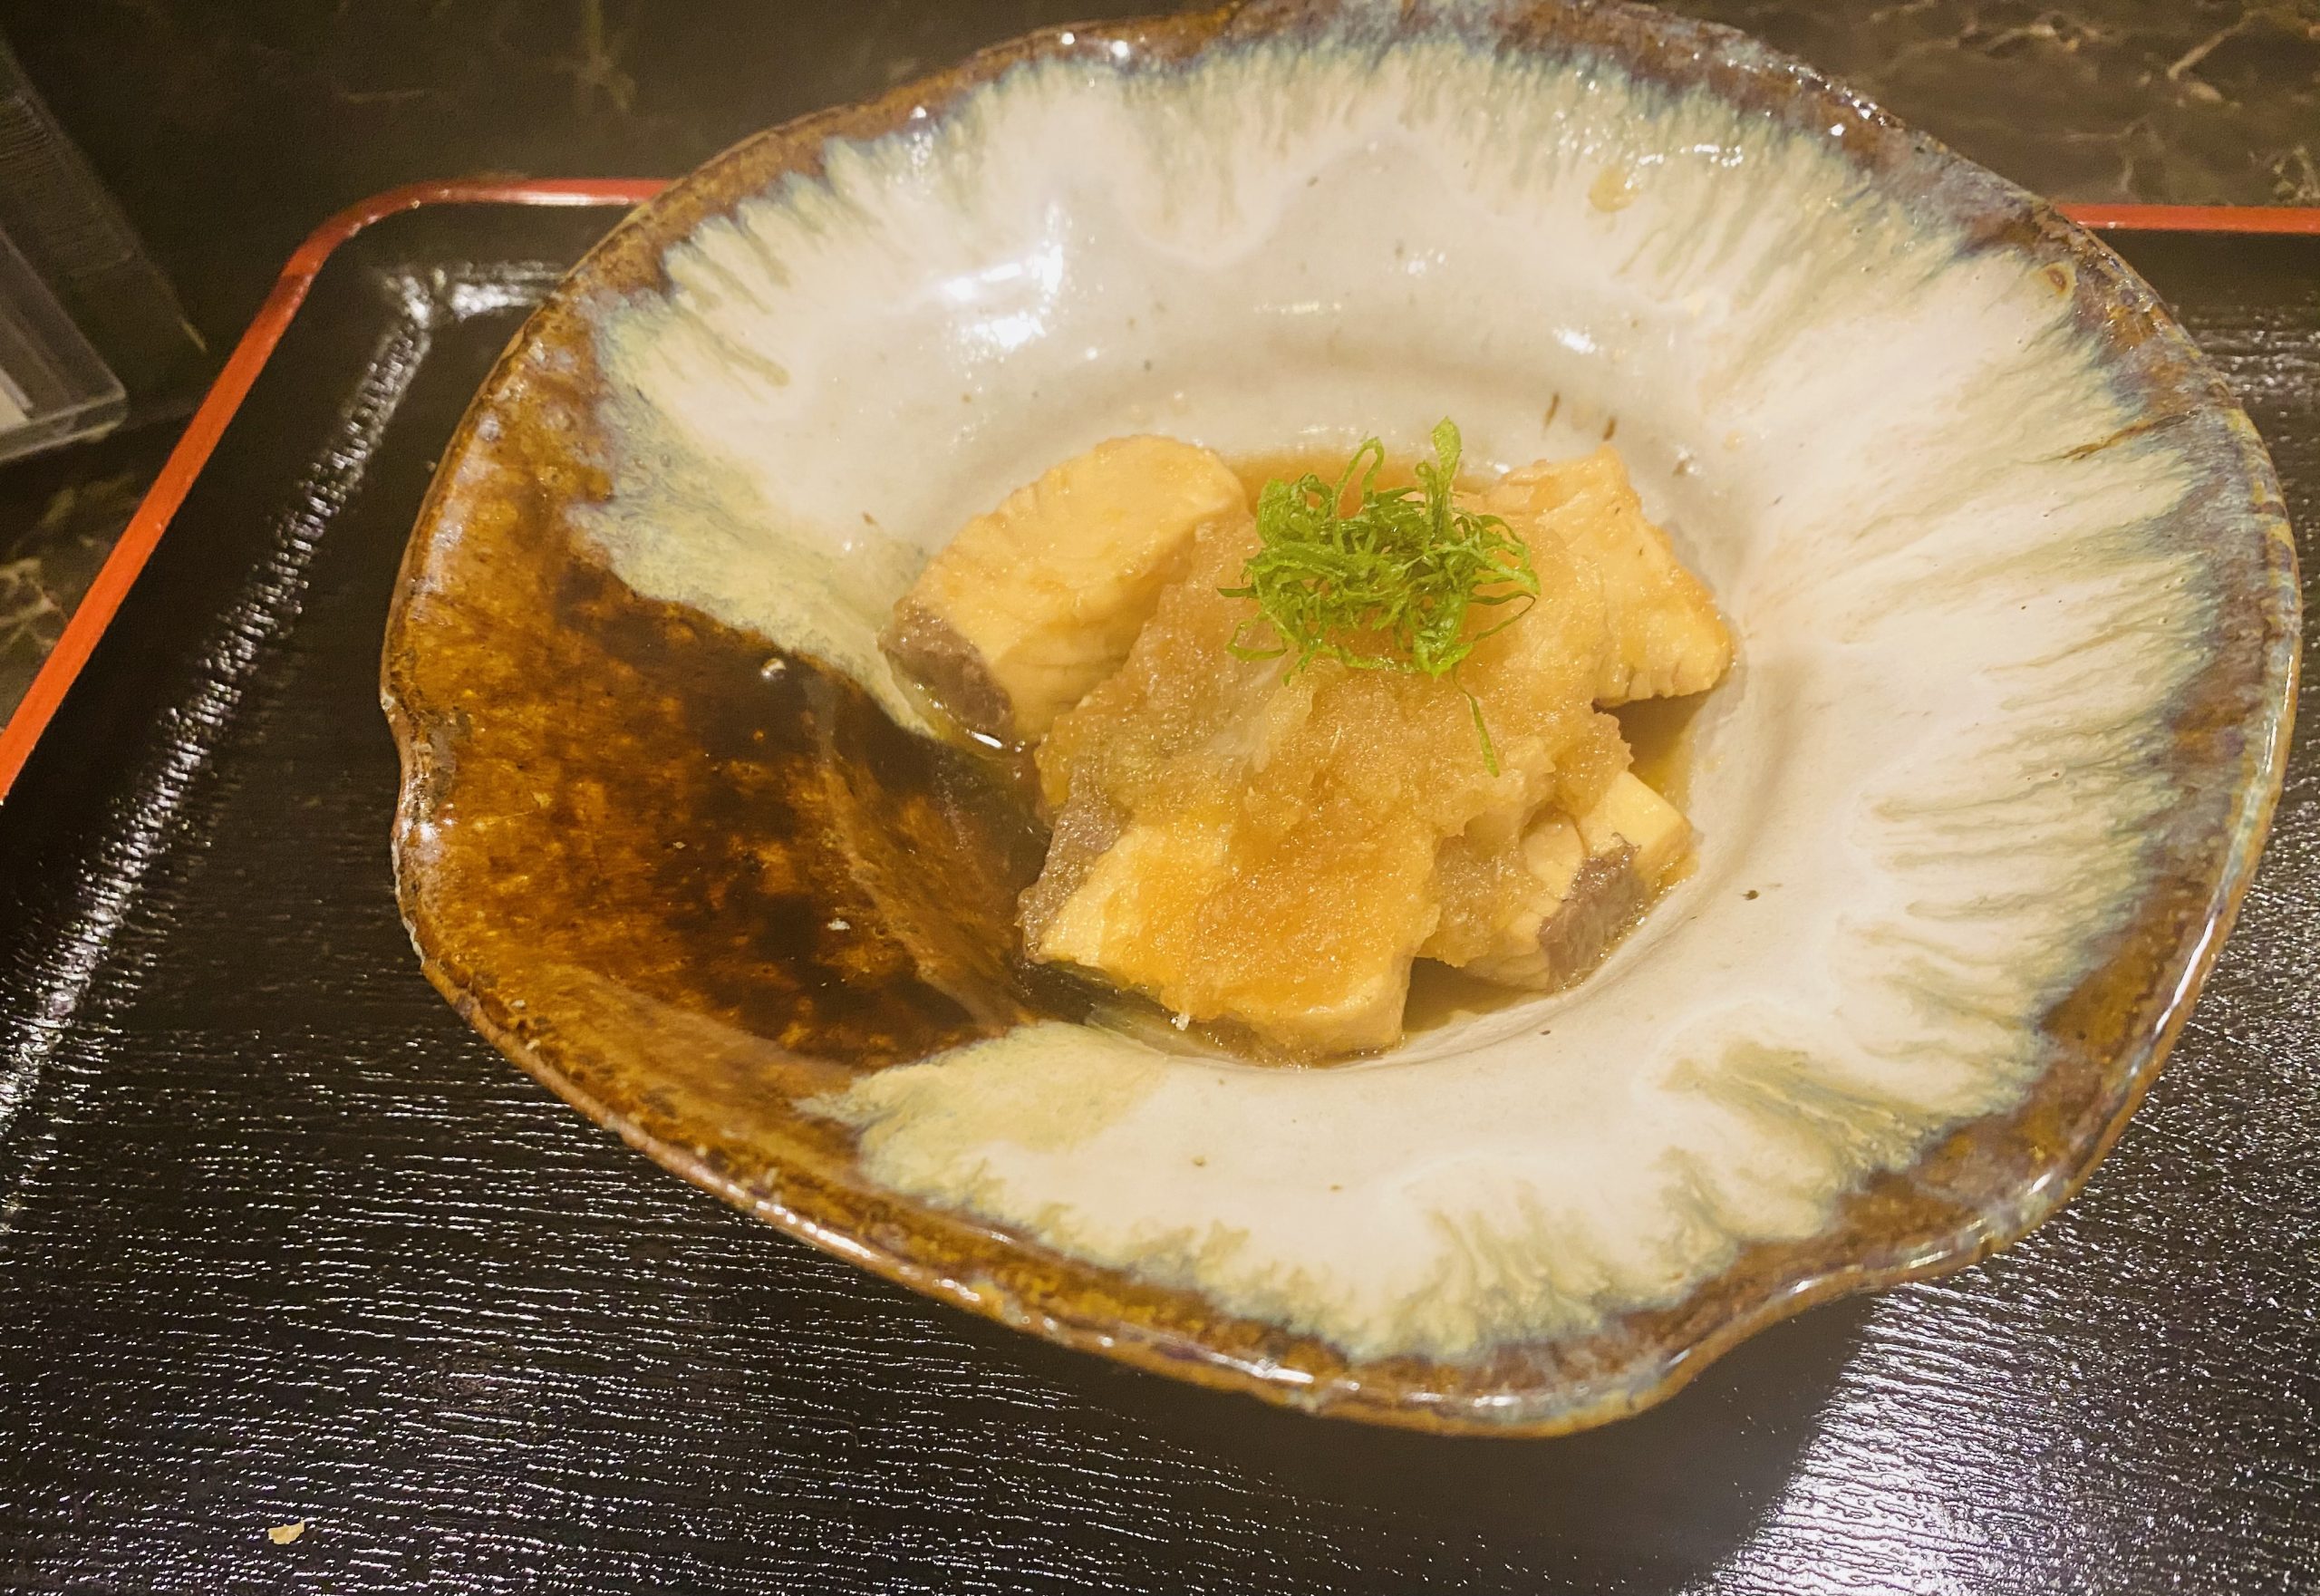 カンパチのみぞれ煮 海の恵み 食の底力 Japan 公式レシピサイト